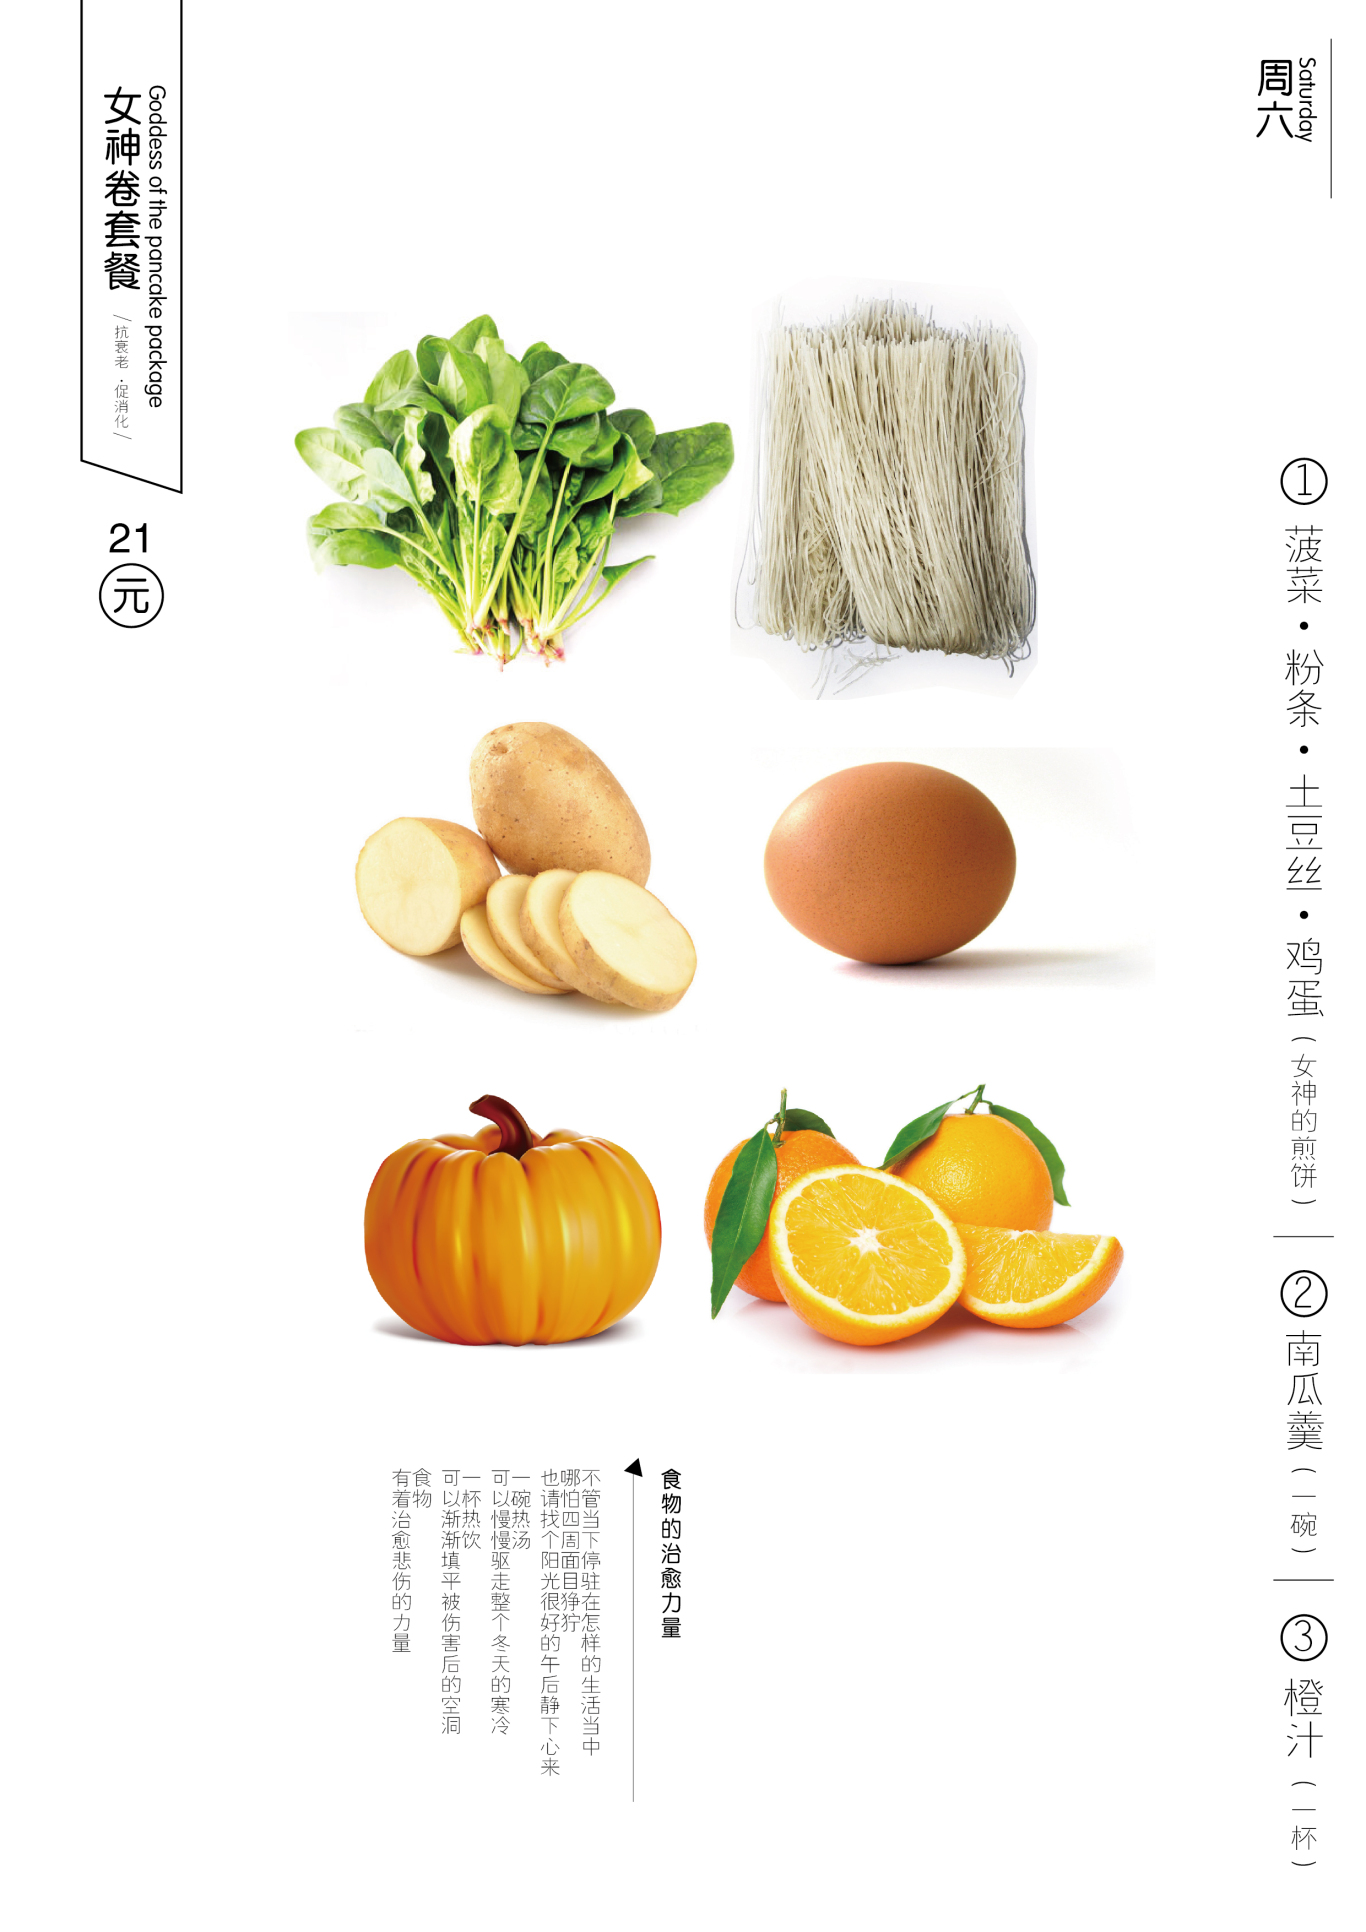 菜菜卷包装菜单设计图13